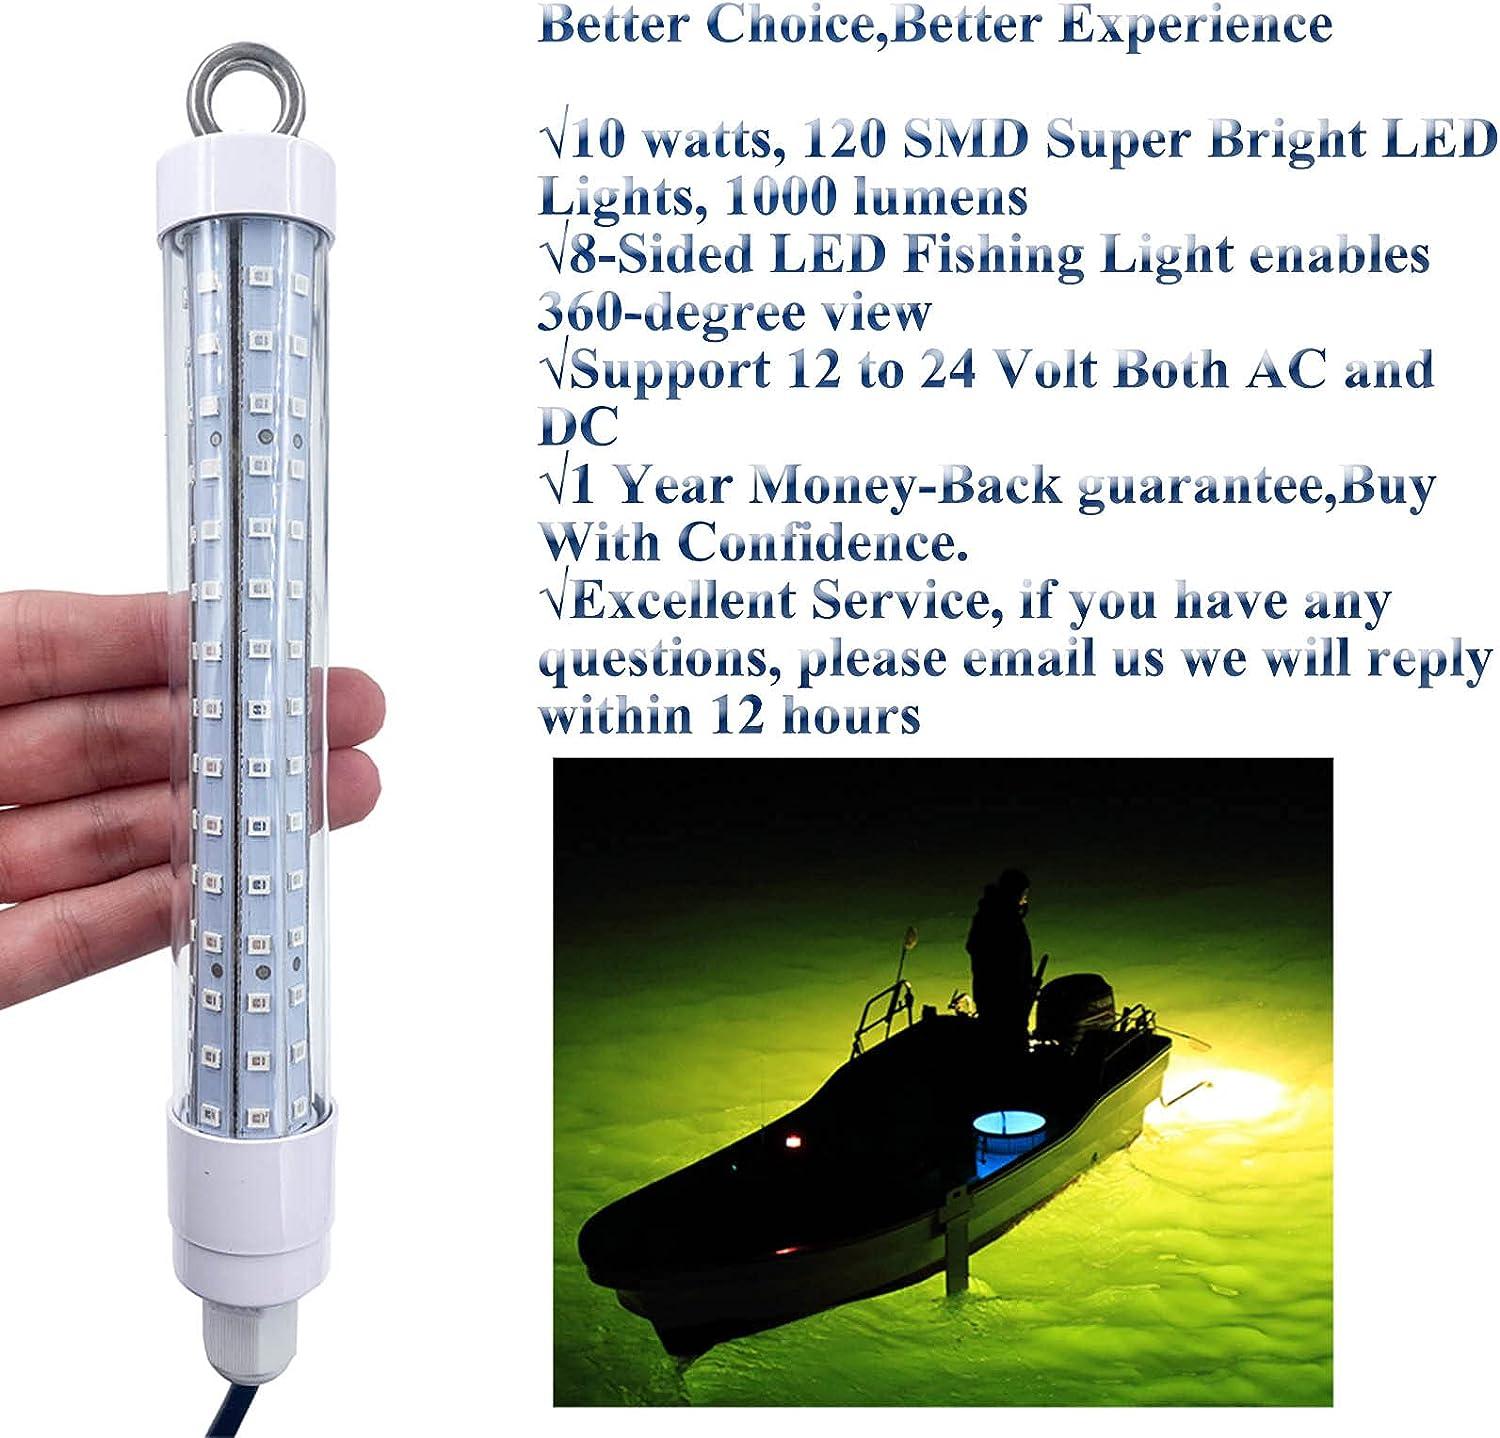 LED fishing lamp (A) and LED fishing vessel (B).